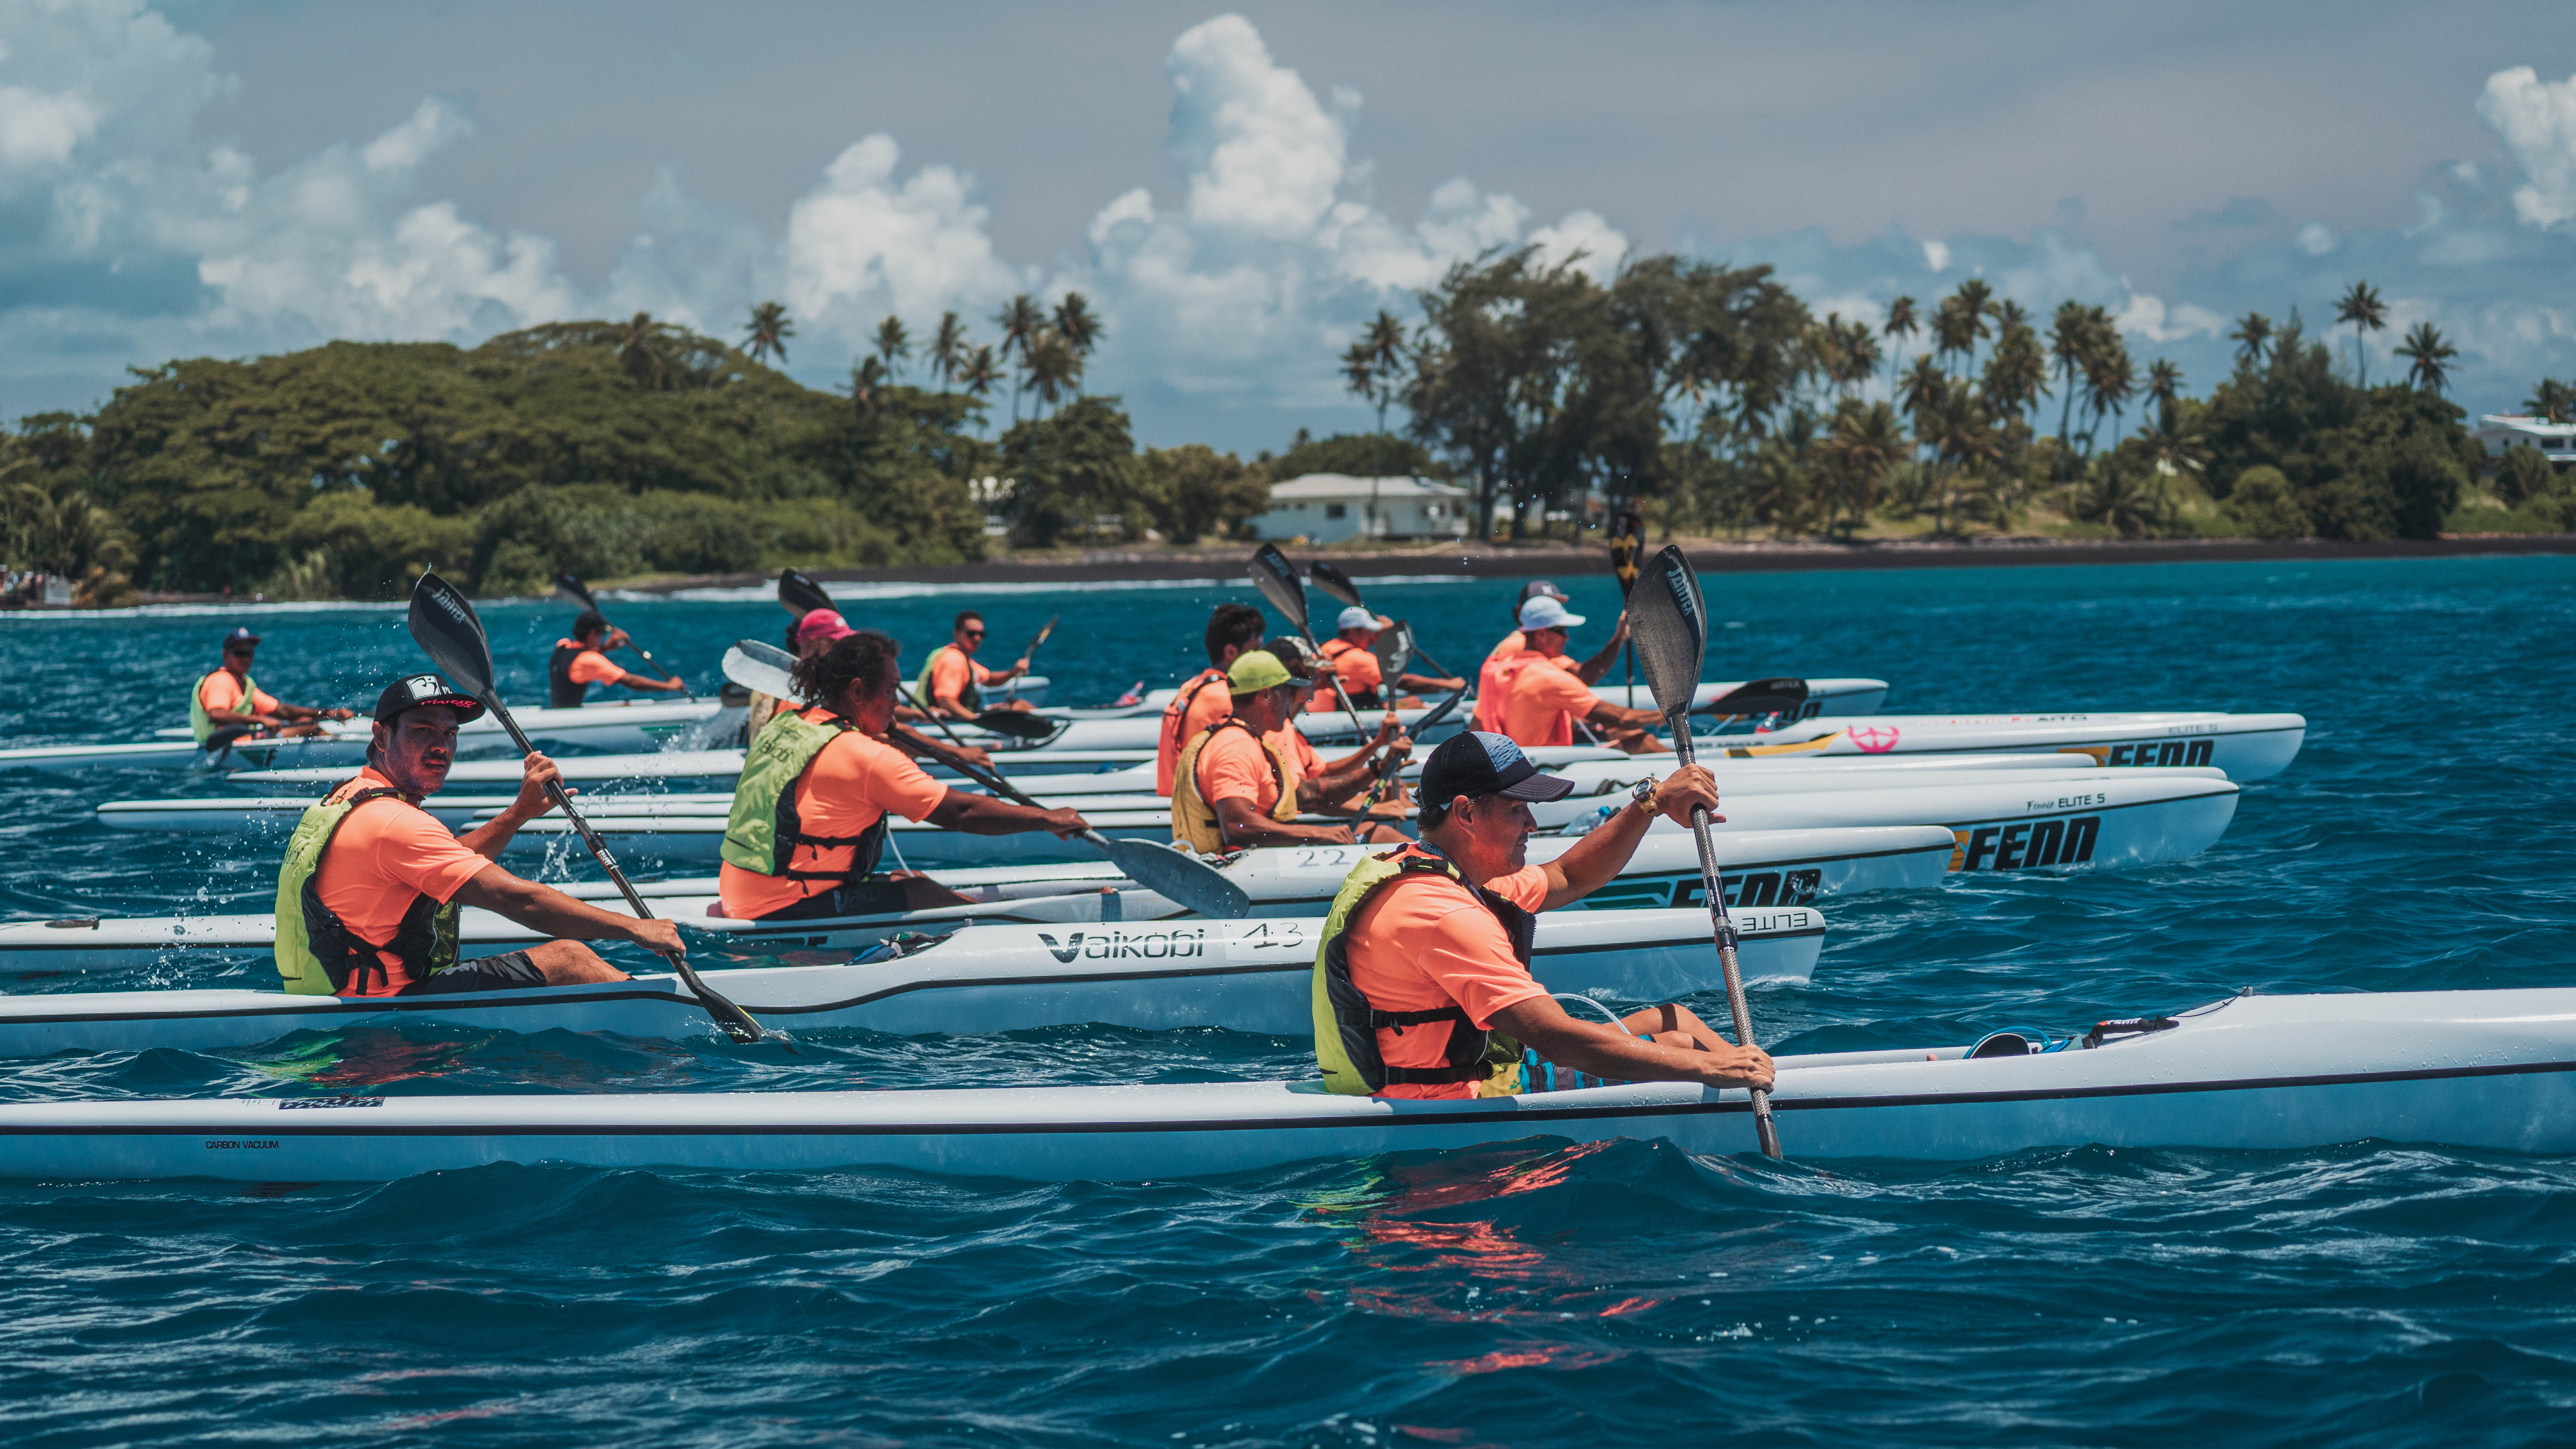 La saison de kayak sera notamment marquée par les courses du Te 'Aito Surfski, organisées en juin en marge du Te 'Aito en va'a. (Photo : Overpeek Studio)